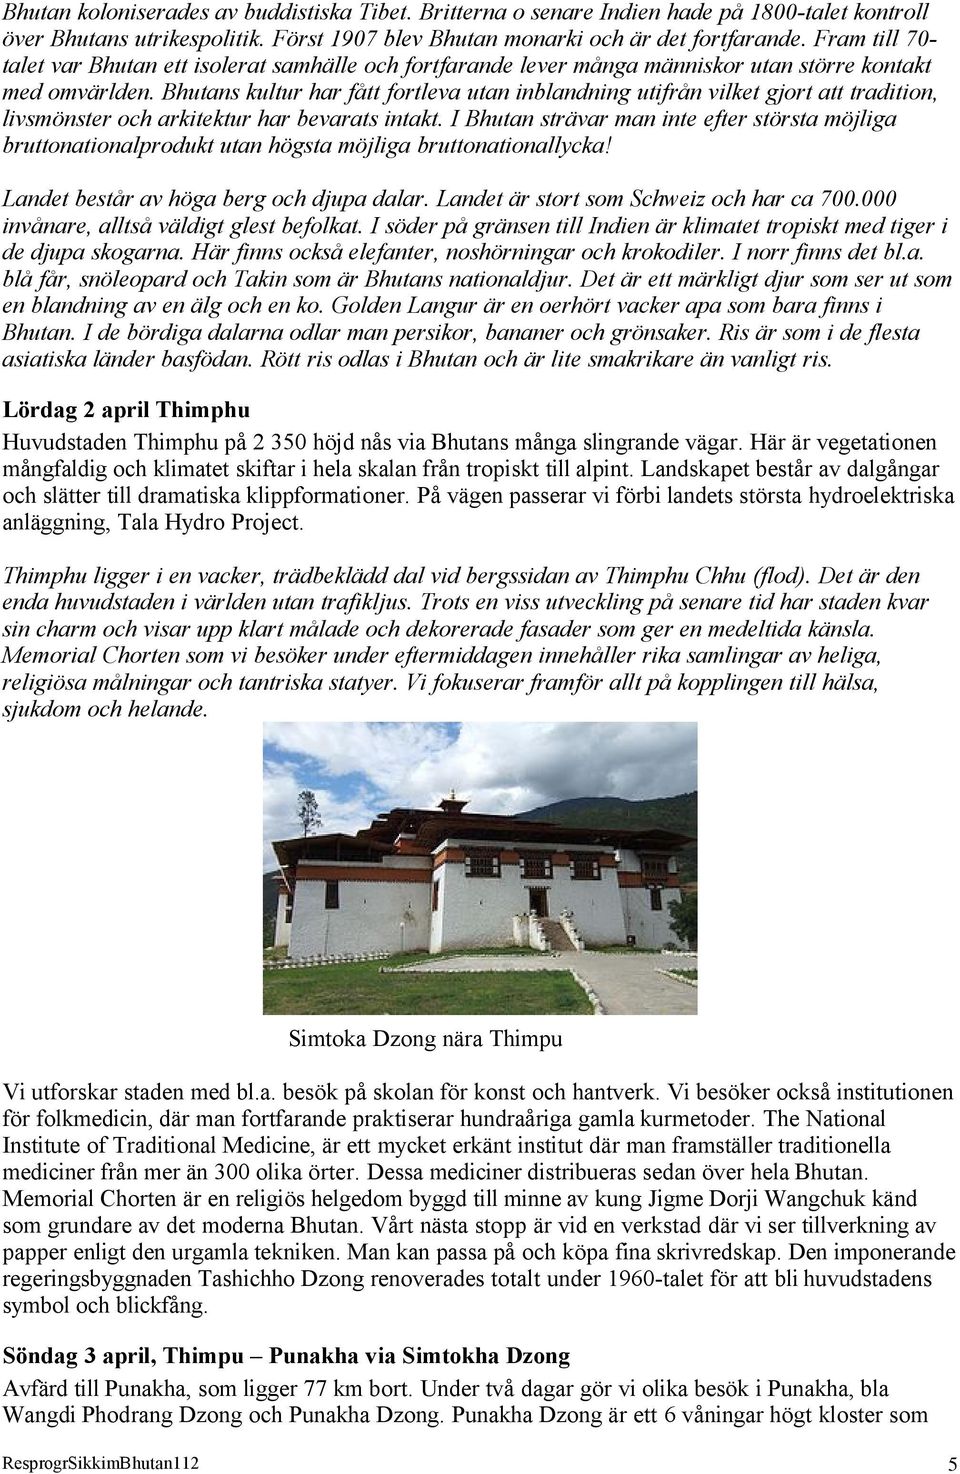 Bhutans kultur har fått fortleva utan inblandning utifrån vilket gjort att tradition, livsmönster och arkitektur har bevarats intakt.